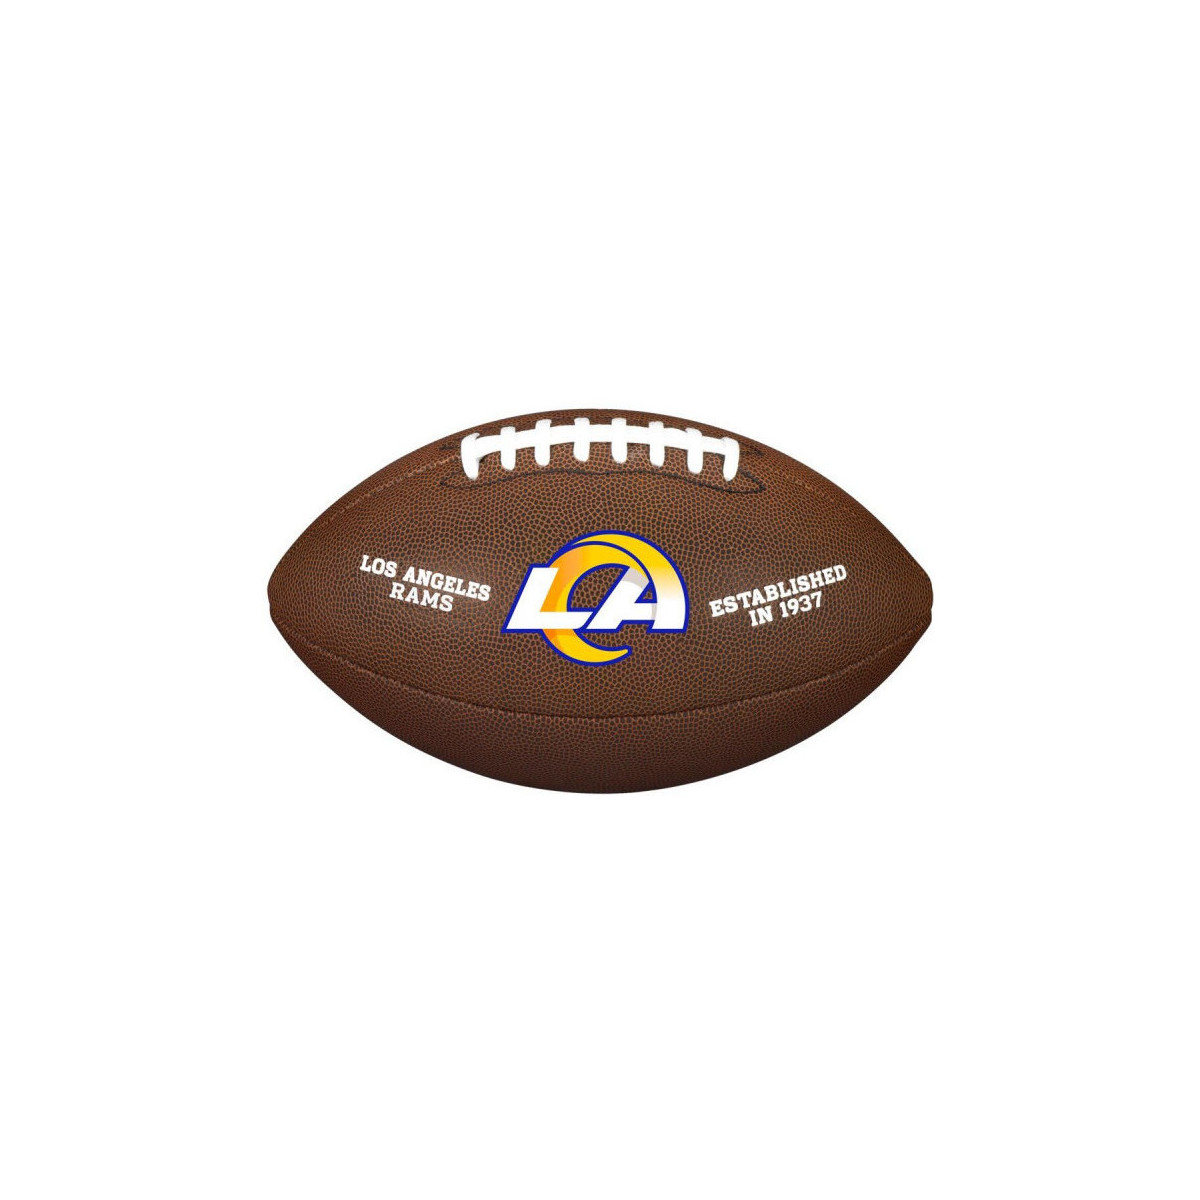 Accessoires Accessoires sport Wilson Ballon Football Américain NFL Multicolore